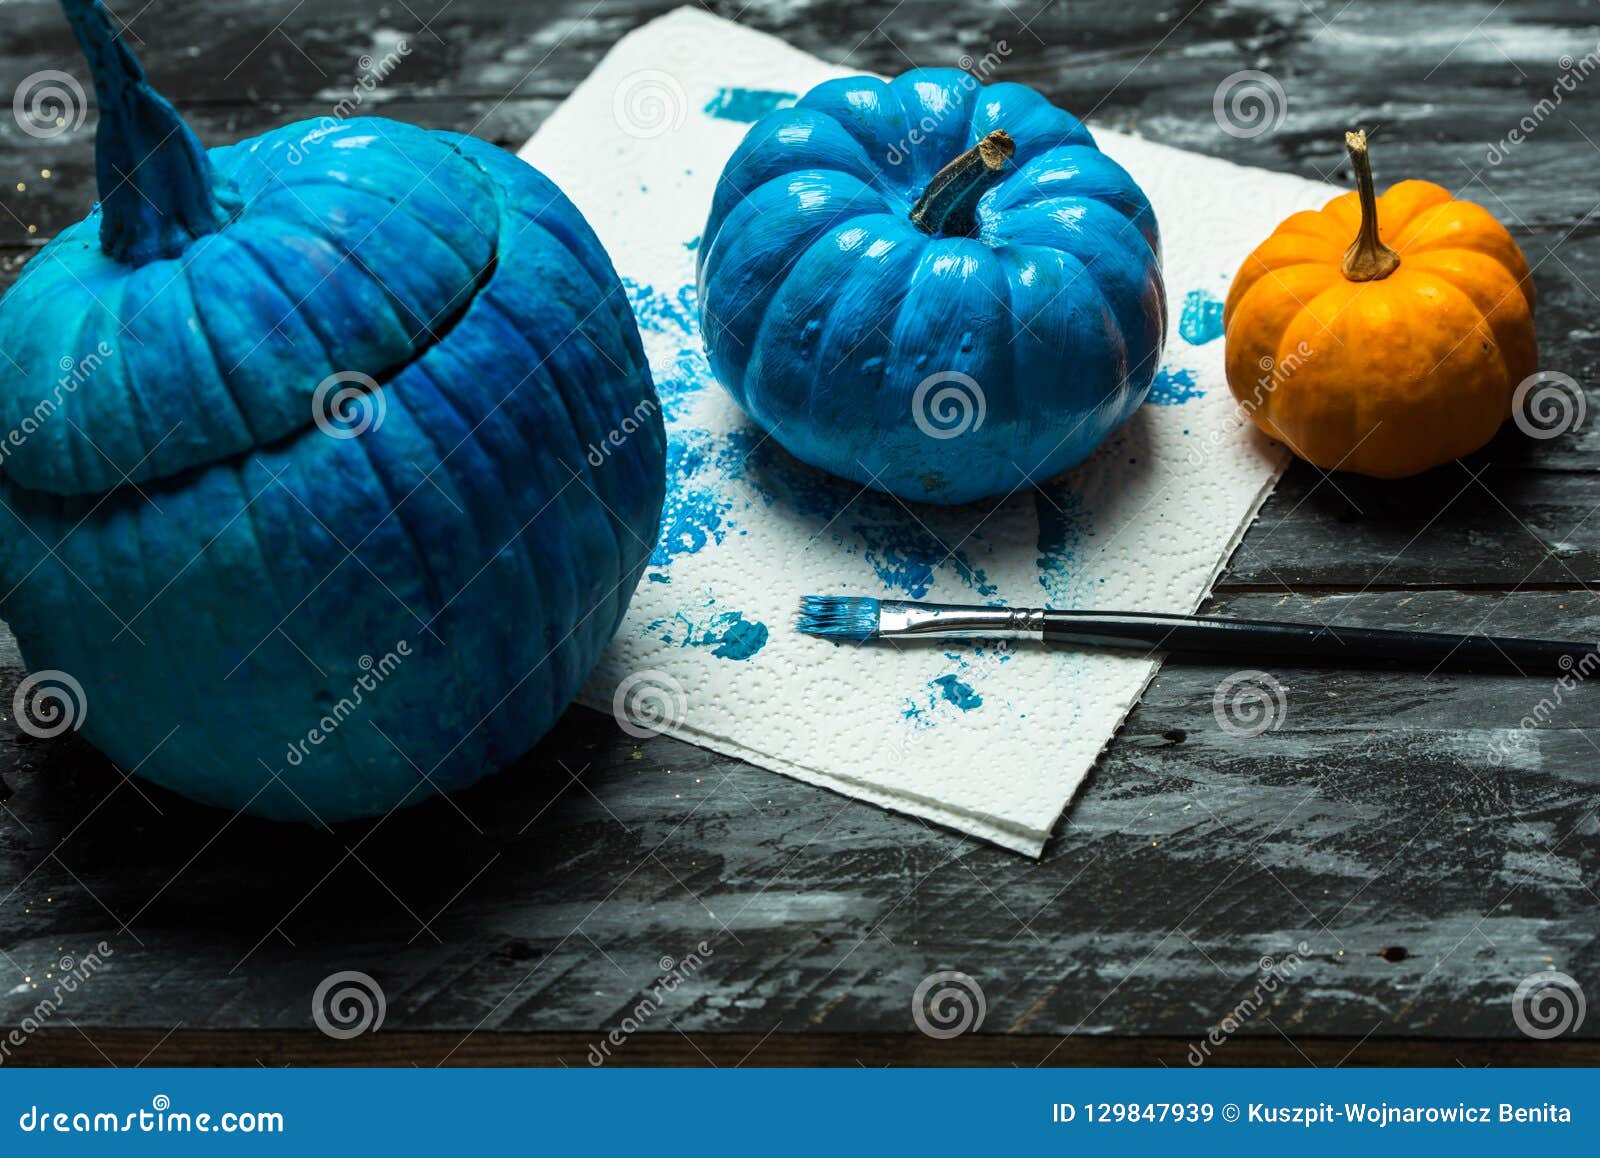 winkel bestrating Steil Doe Het Zelf, Die Halloween-pompoenen in Blauw Schilderen Stock Afbeelding  - Image of geschilderd, decoratief: 129847939